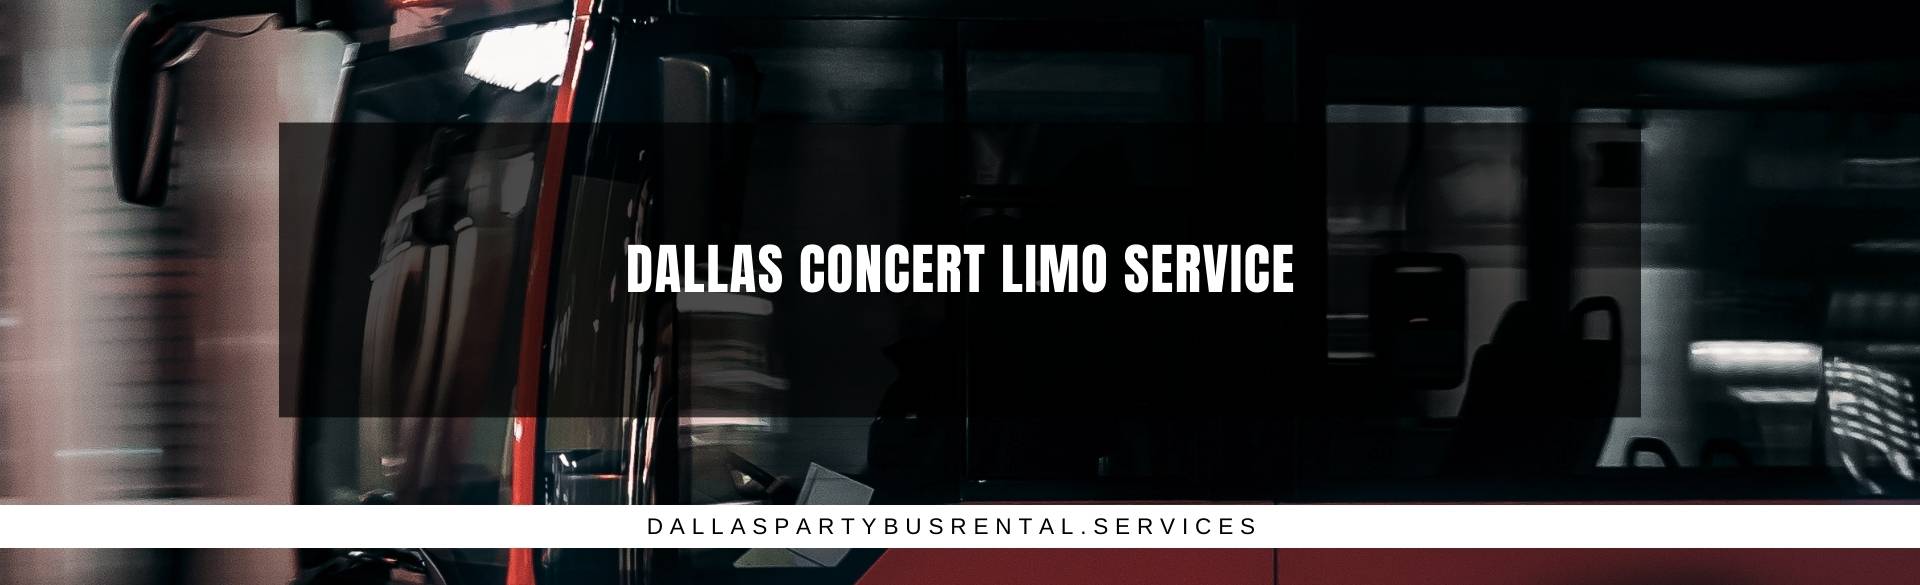 Dallas Concert Limo Service